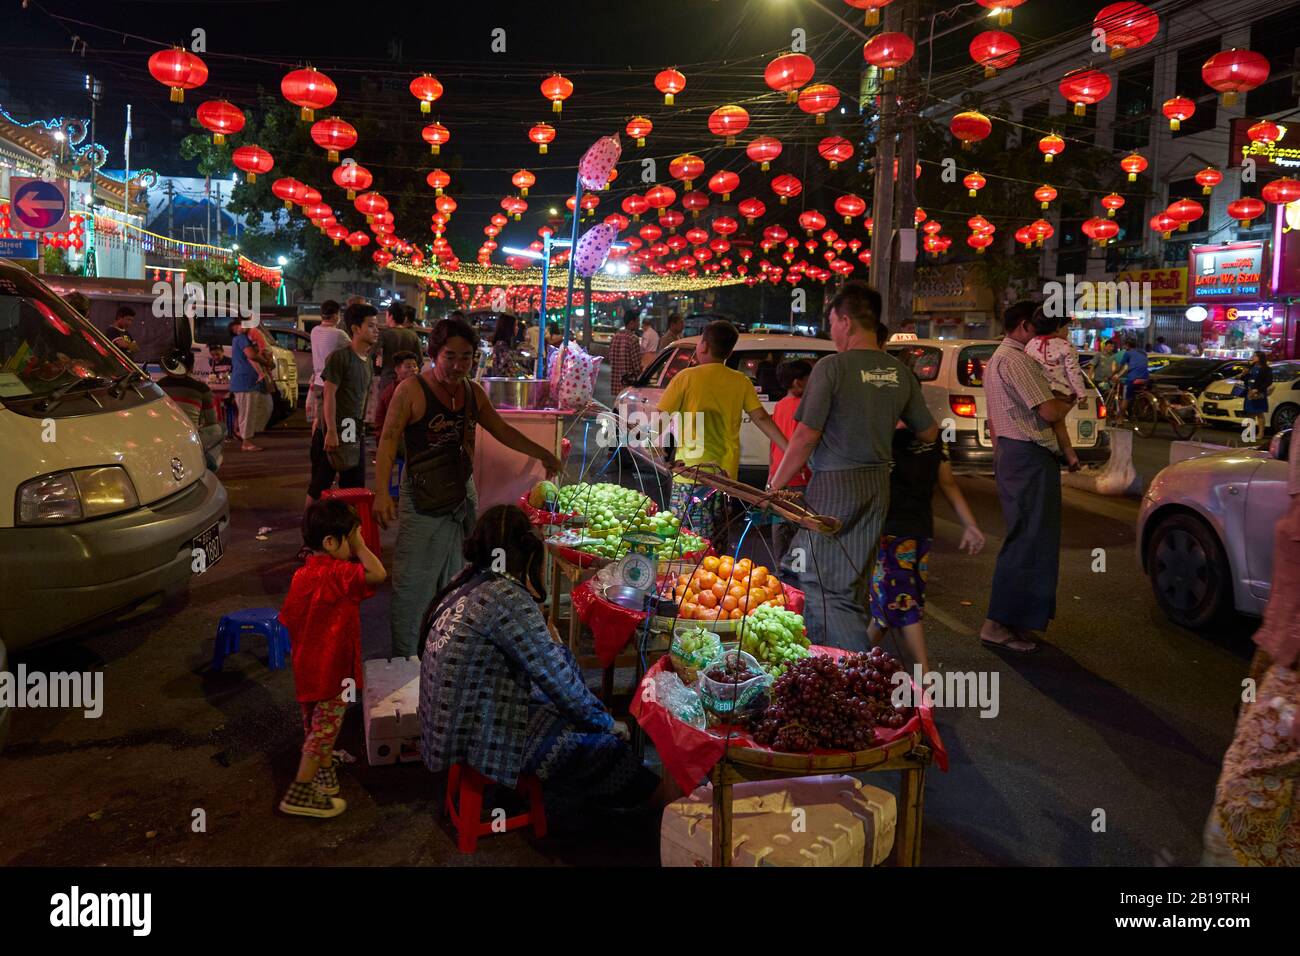 Für das chinesische Neujahrsfest mit roten Lampions geschmückte Straße, Obststand, Passanten, chinesisches Viertel, Yangon, Myanmar Banque D'Images